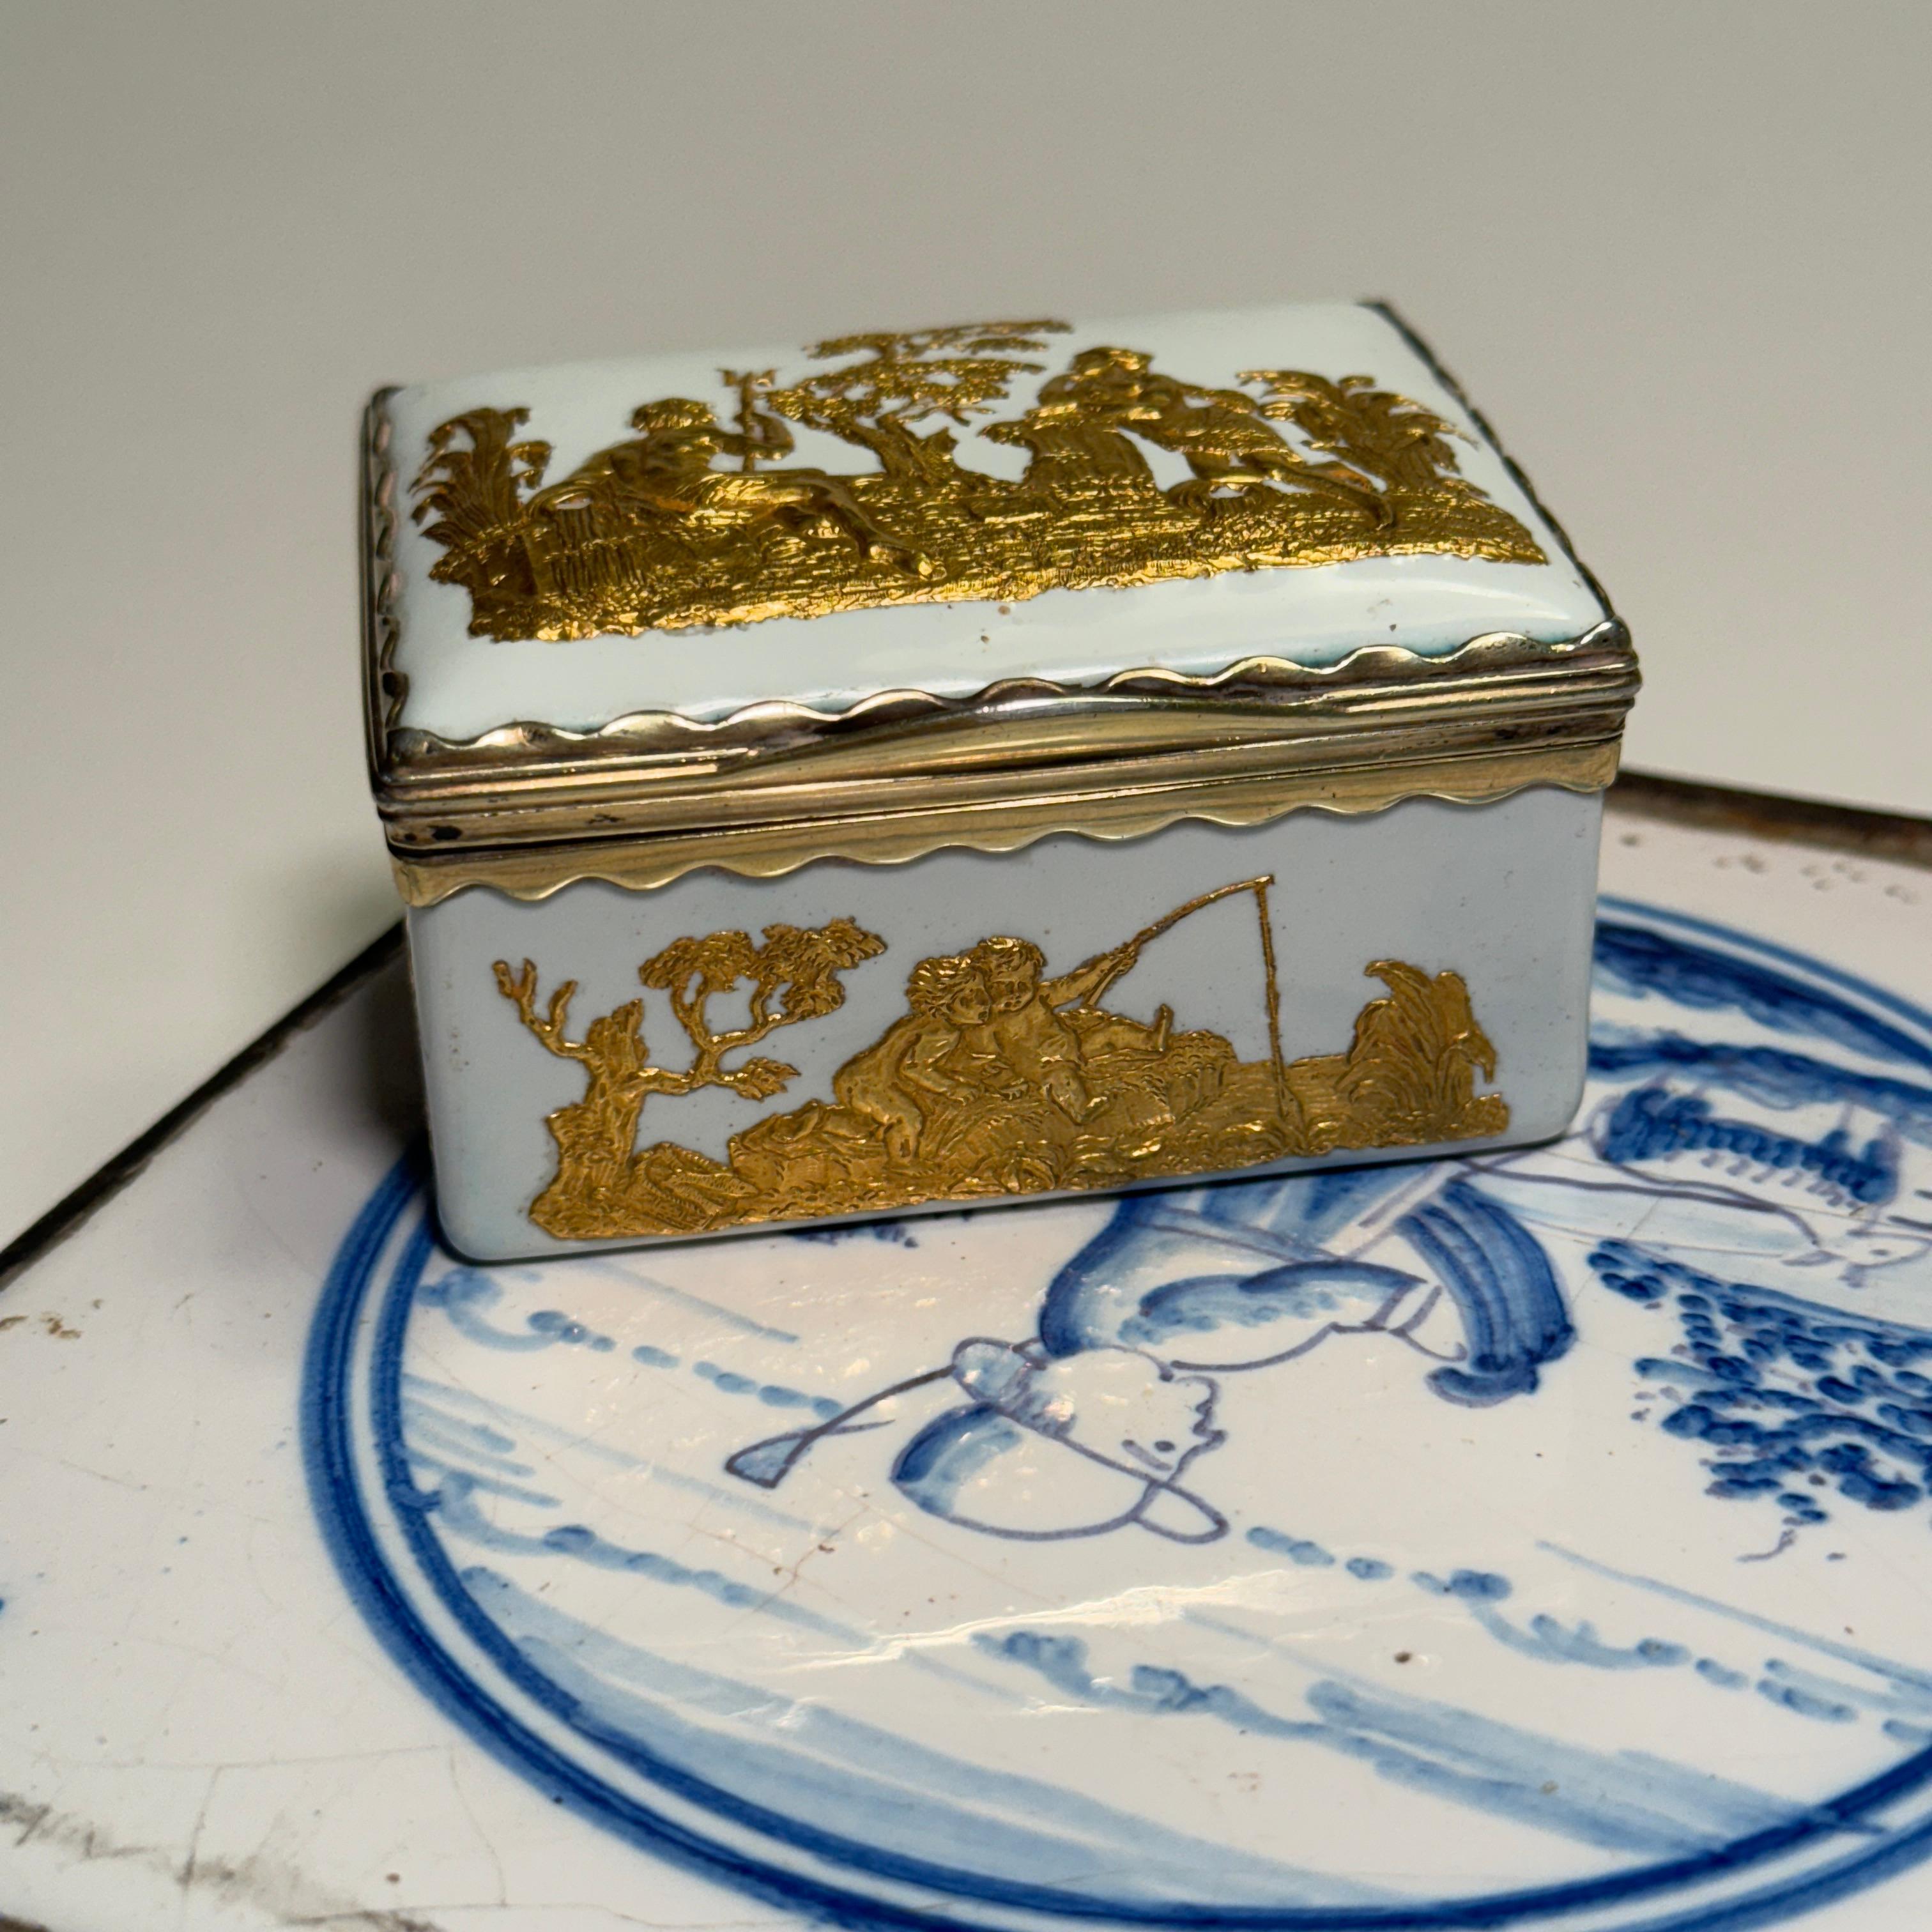 Porzellan-Schnupftabakdose aus der Mitte des 18. Jahrhunderts mit vergoldetem Ormulu-Relief und klassischen Motiven aus dem Empire. Die Innenseite des Deckels ist mit bunten Blumen verziert.
Eine wunderbare Ergänzung für jede Sammlung auf einem